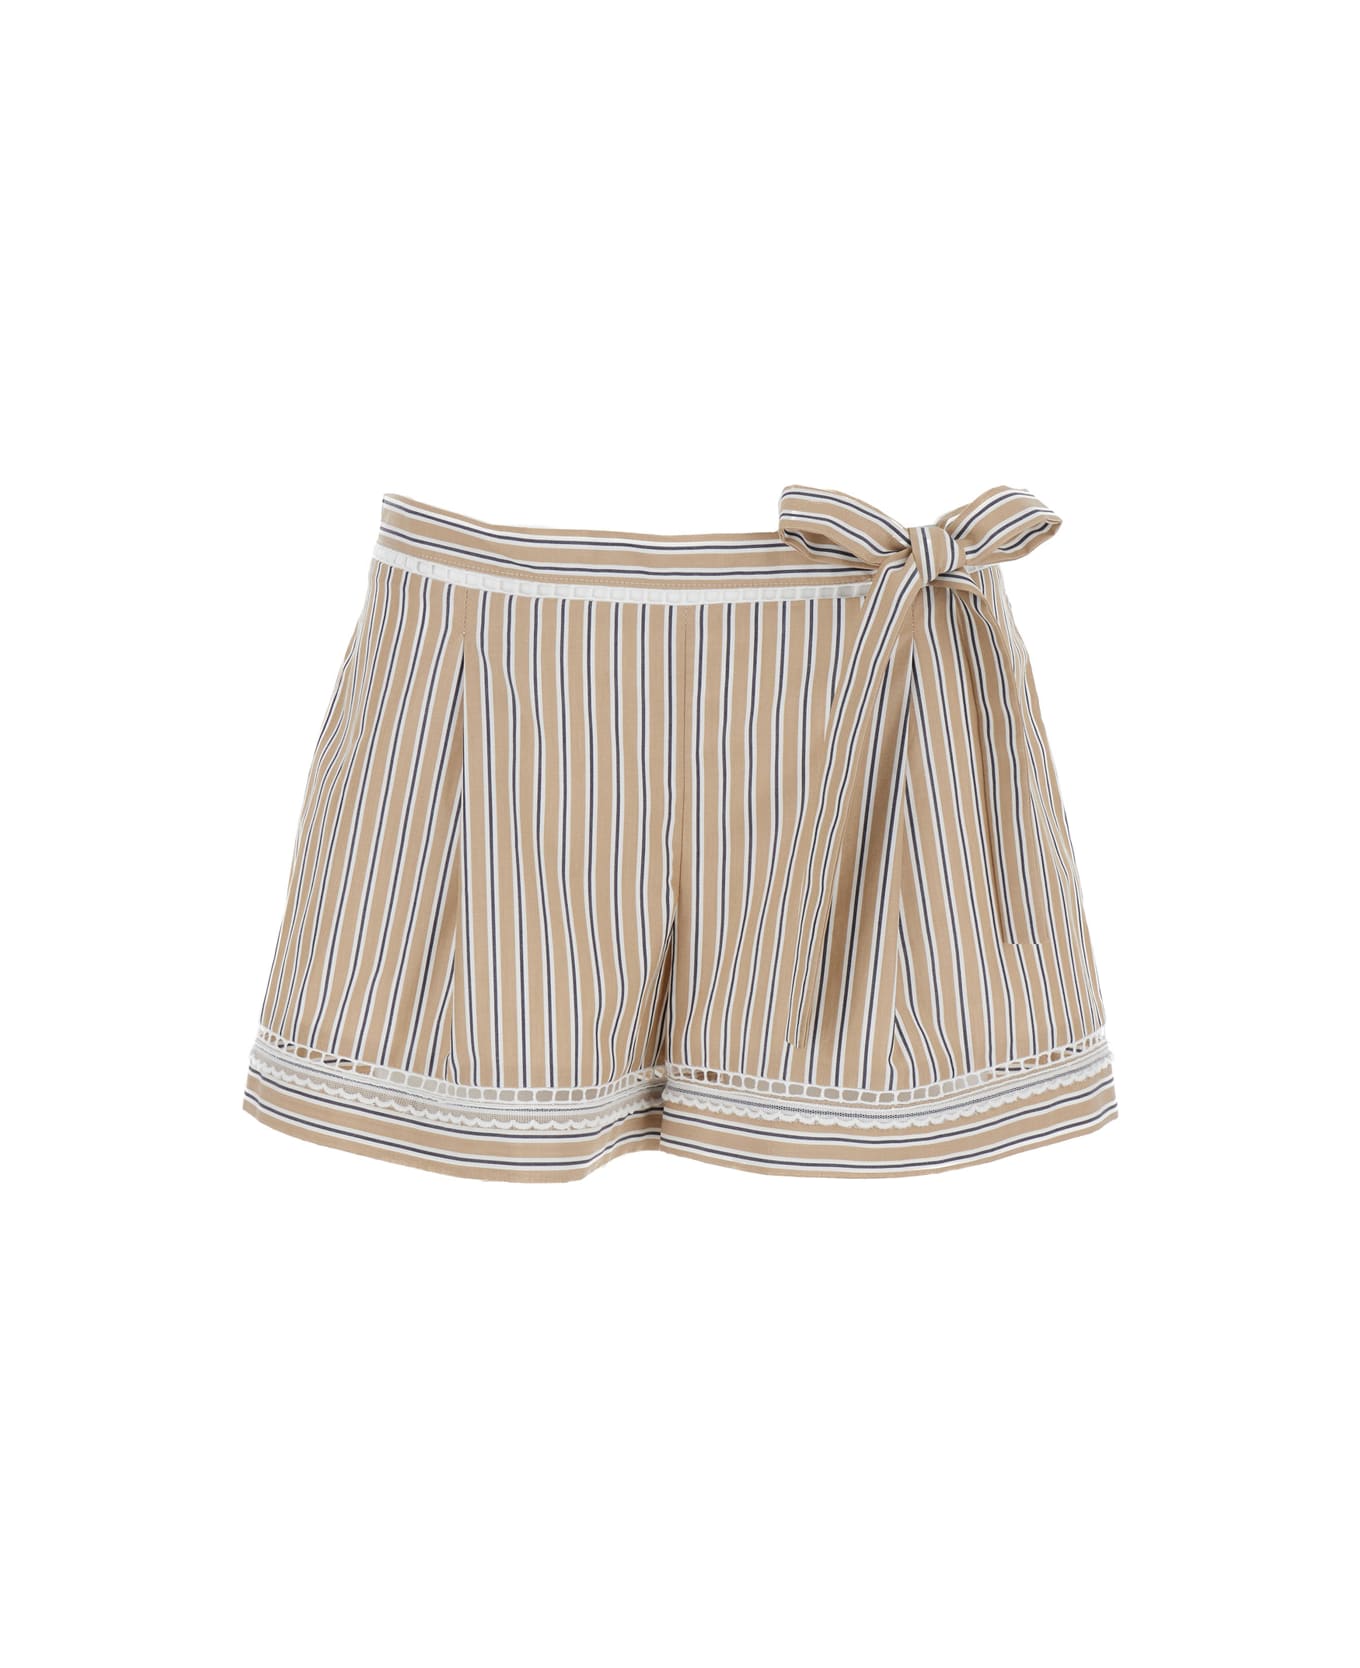 Alberta Ferretti Beige Striped Shorts In Cotton Woman - Beige ショートパンツ